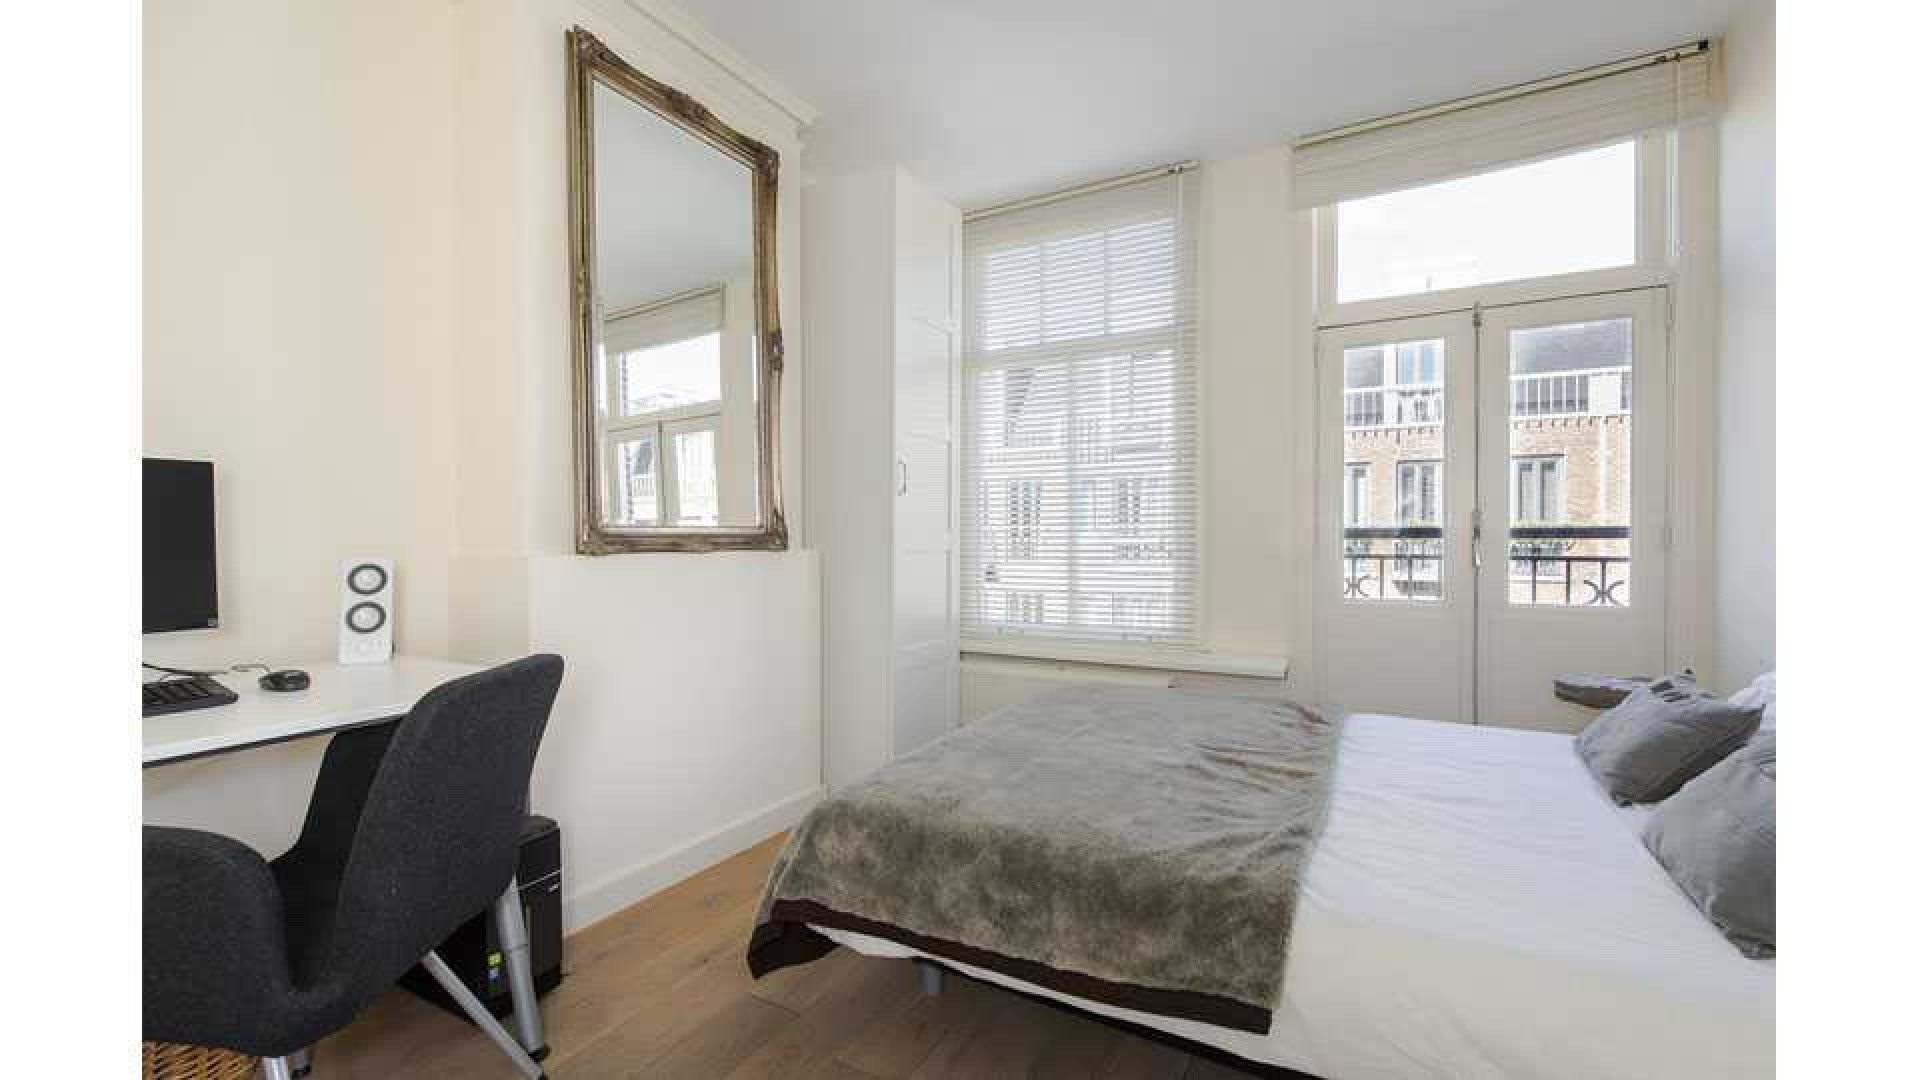 Armin van Buuren koopt luxe dubbel bovenhuis in Amsterdam Oud-West. Zie foto's 12